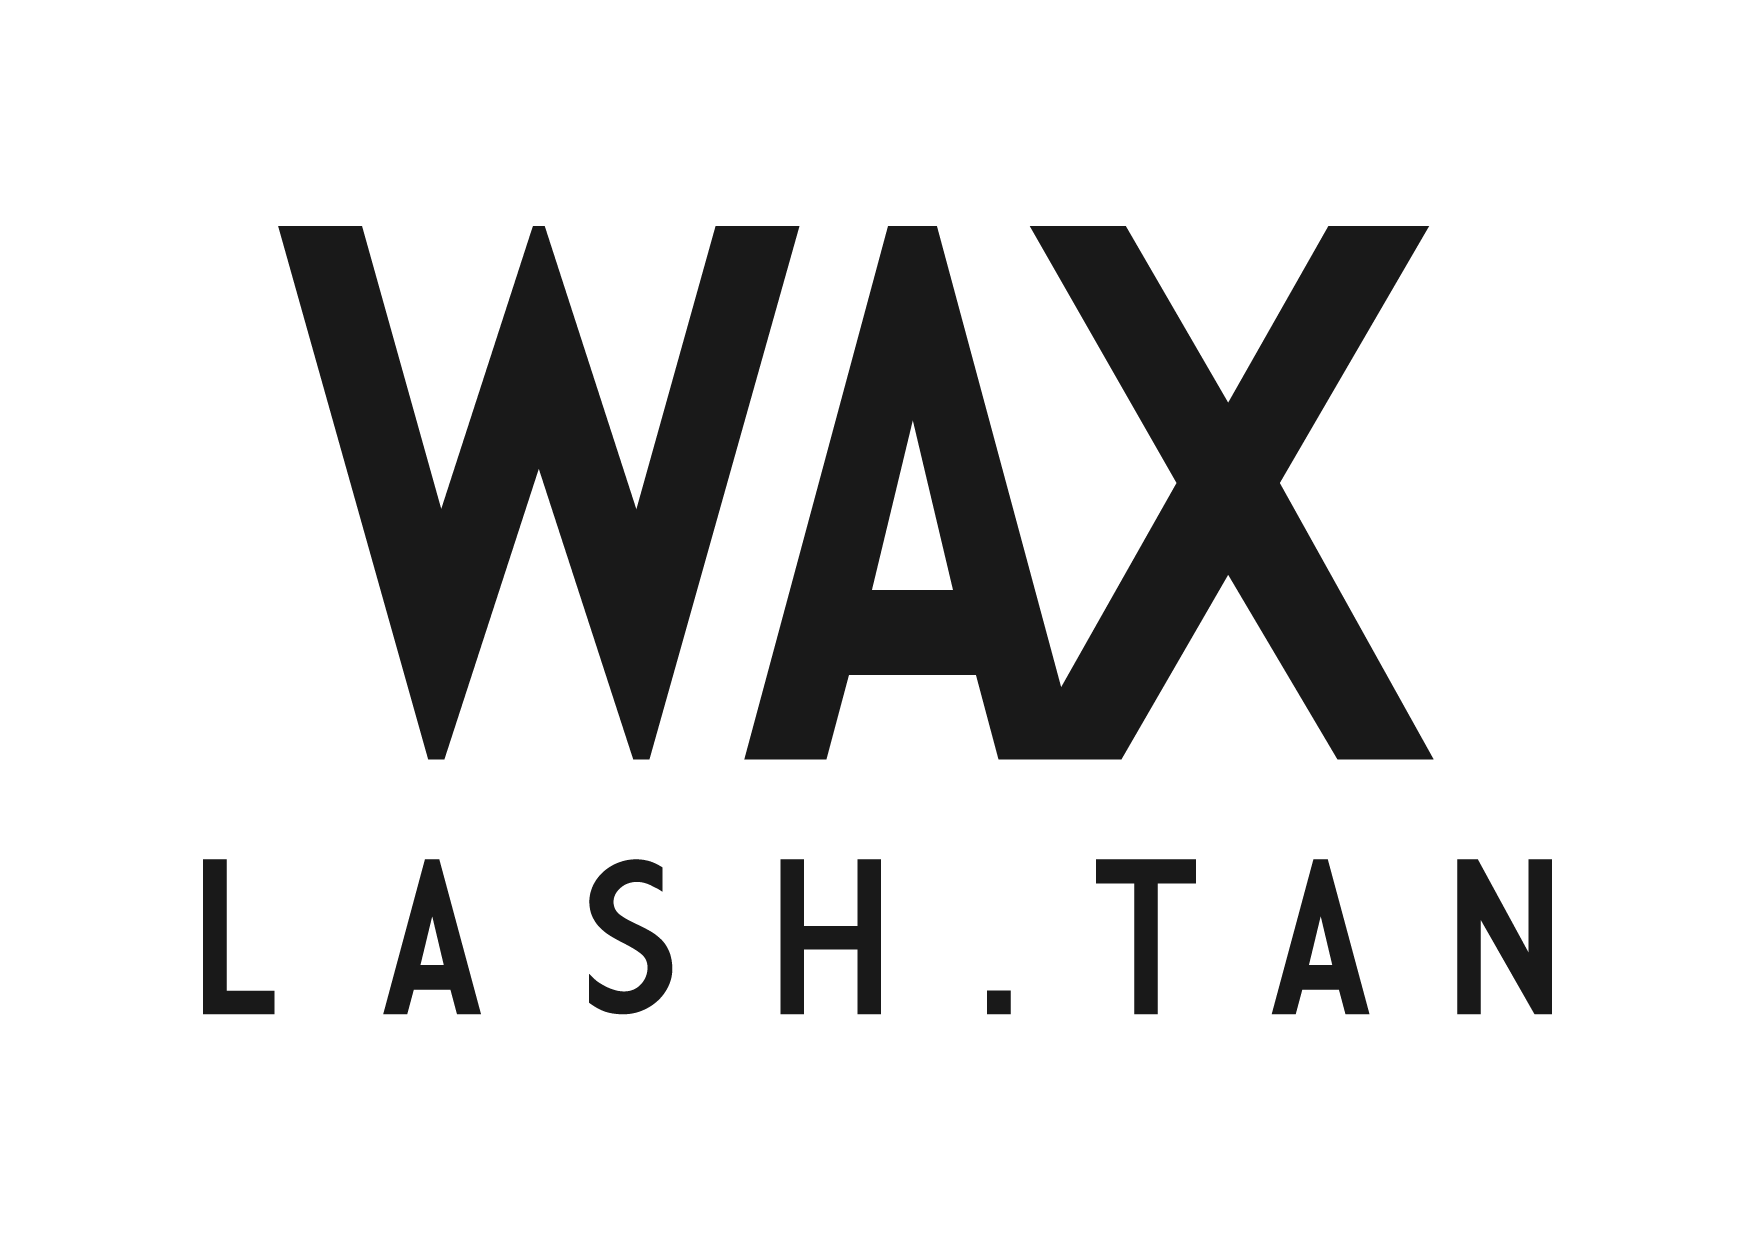 Wax Lash Tan